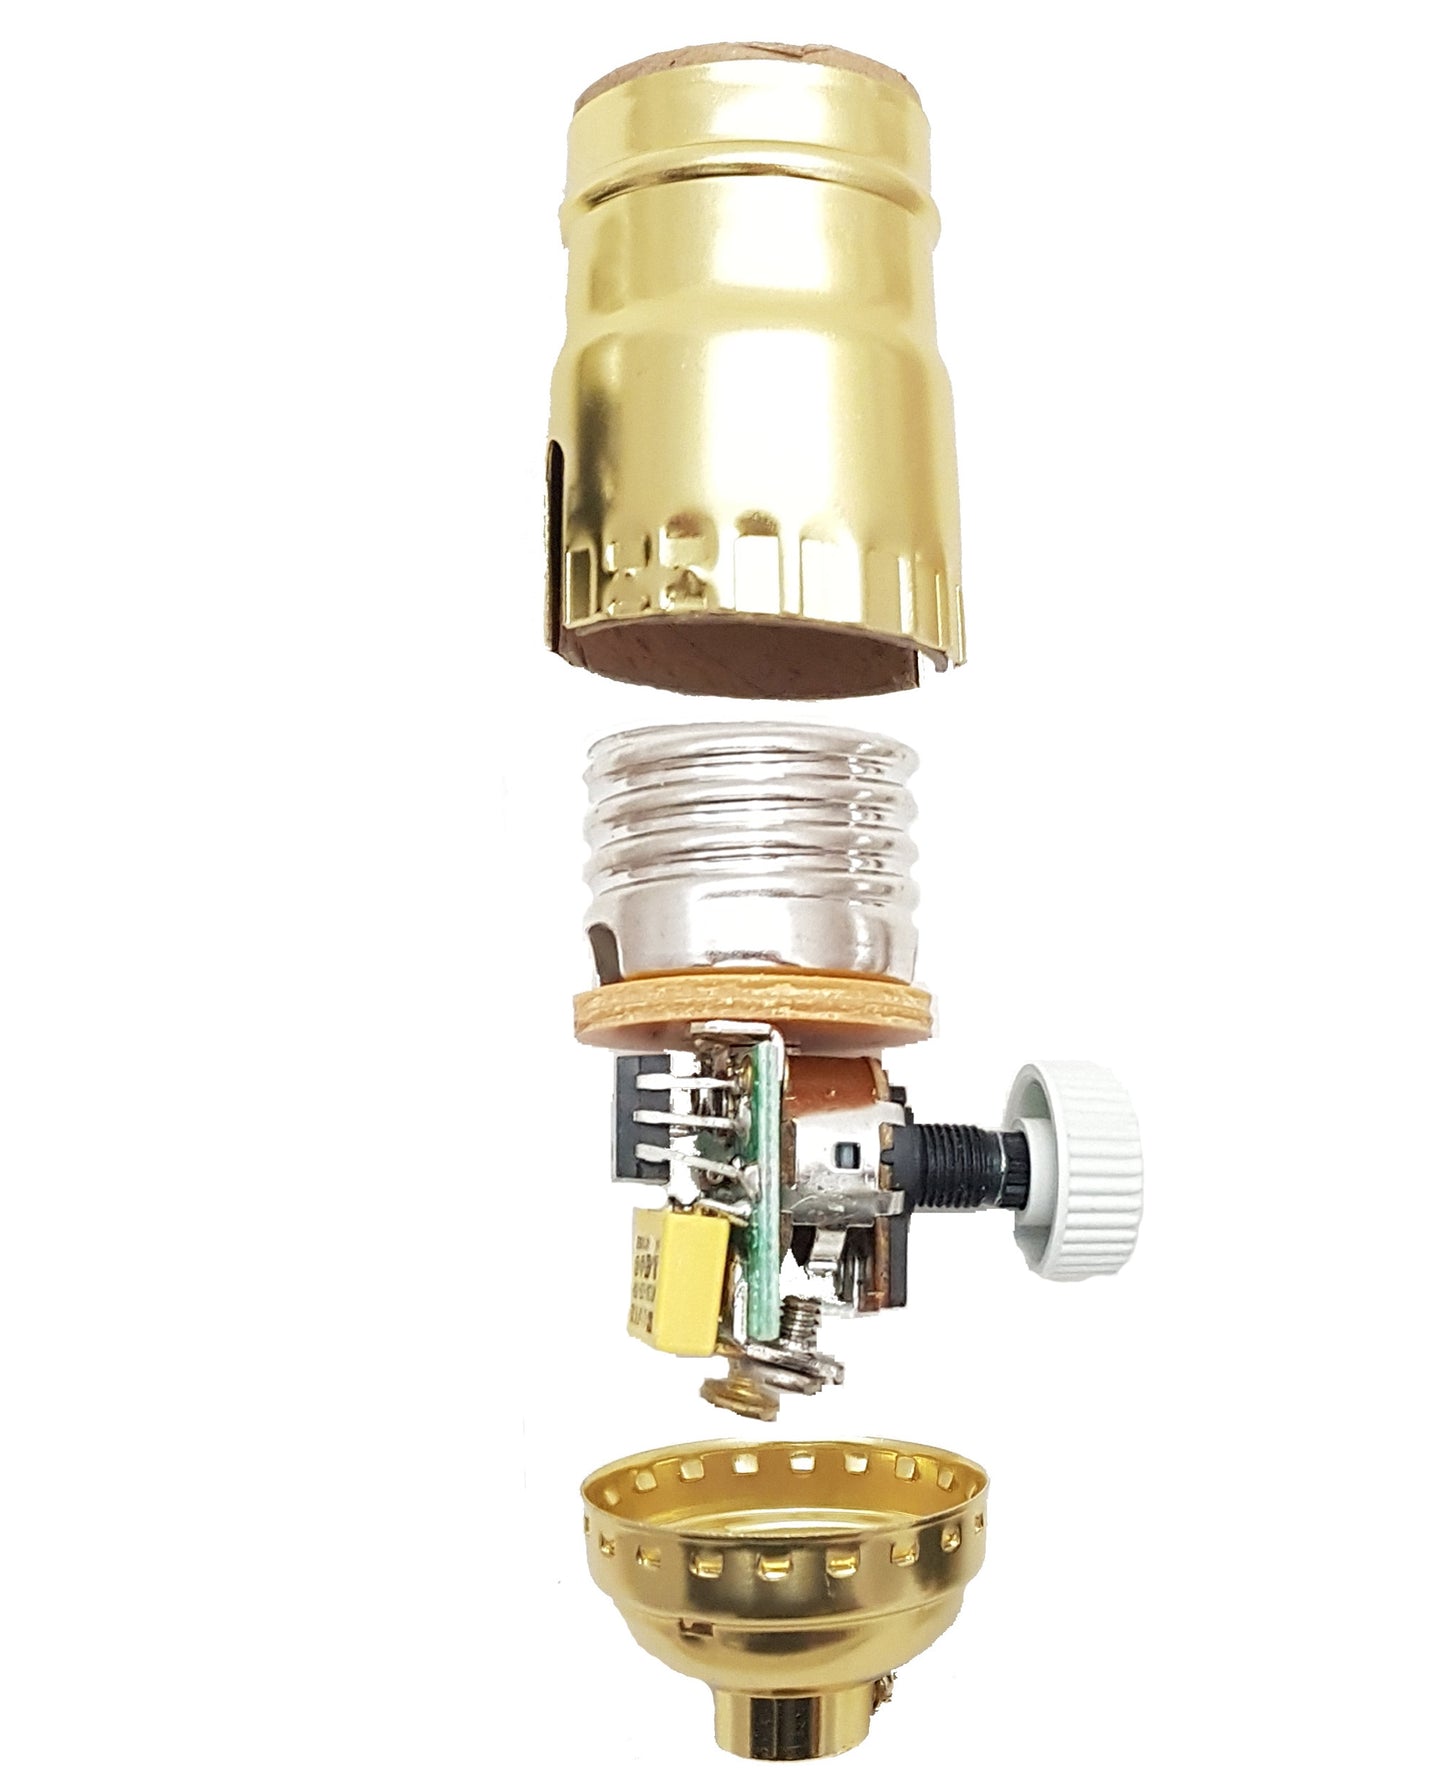 Brass Table Lamp Wiring Kit With Full-range dimmer Socket